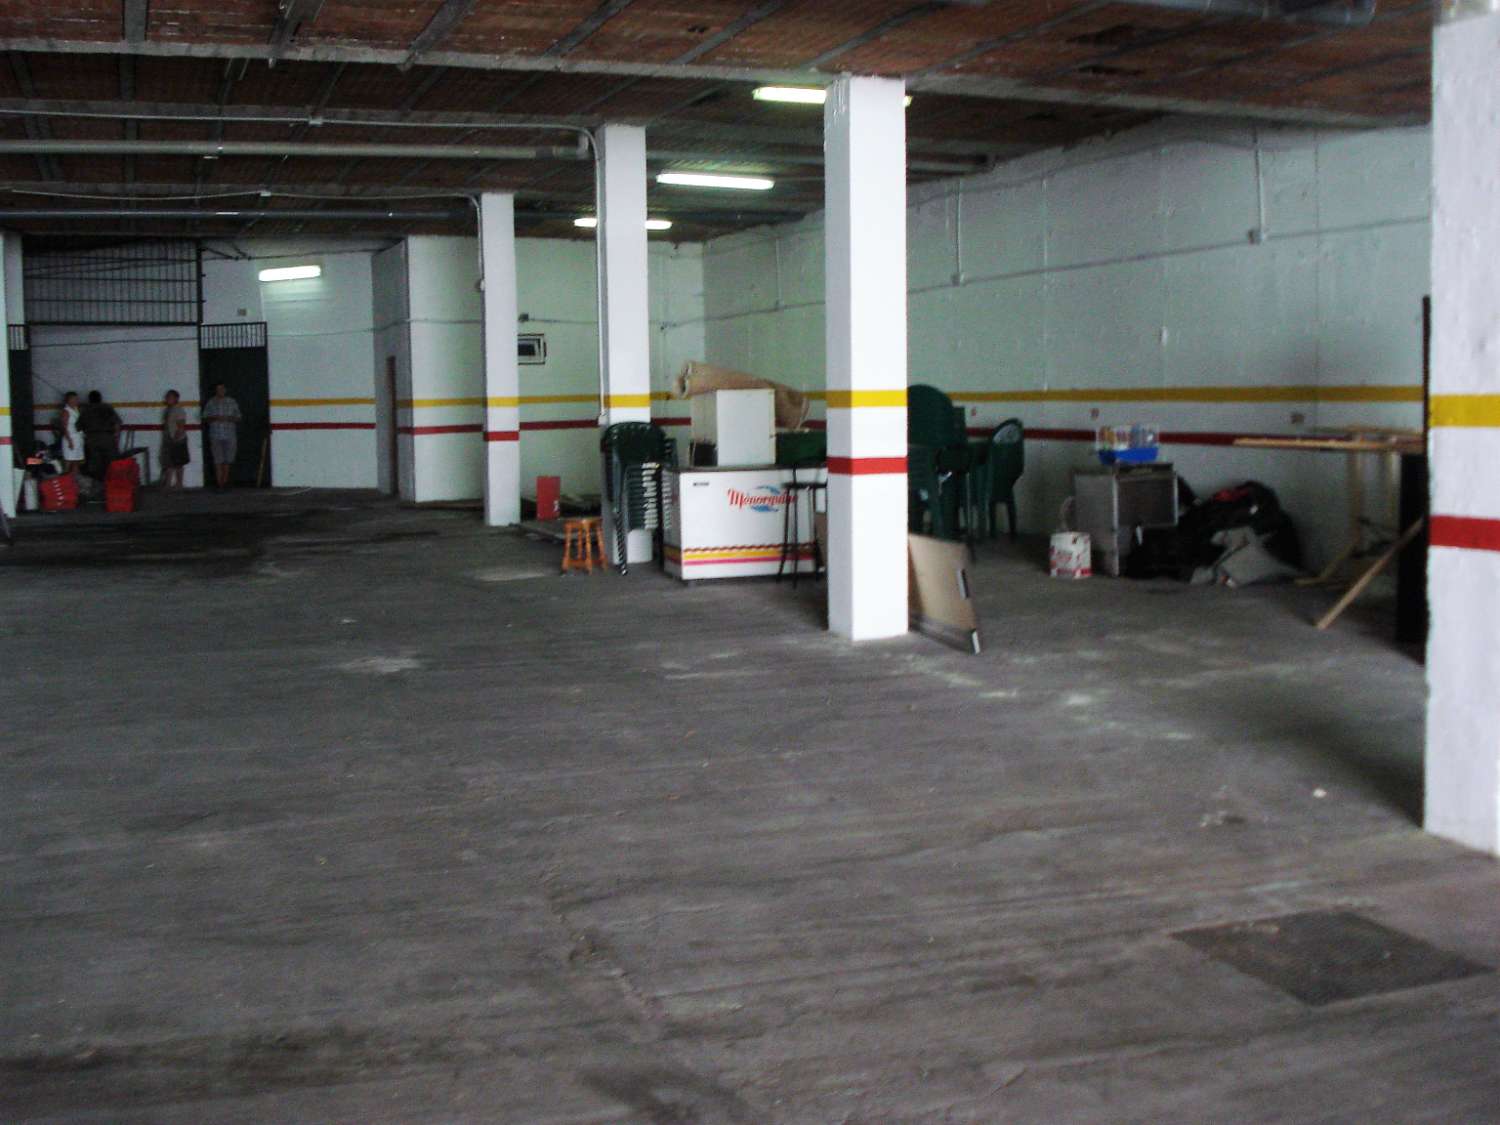 Salg af erhvervsejendomme i Benalmadena, Malaga, Spanien - Ideelt lager, distributør eller mini-opbevaring